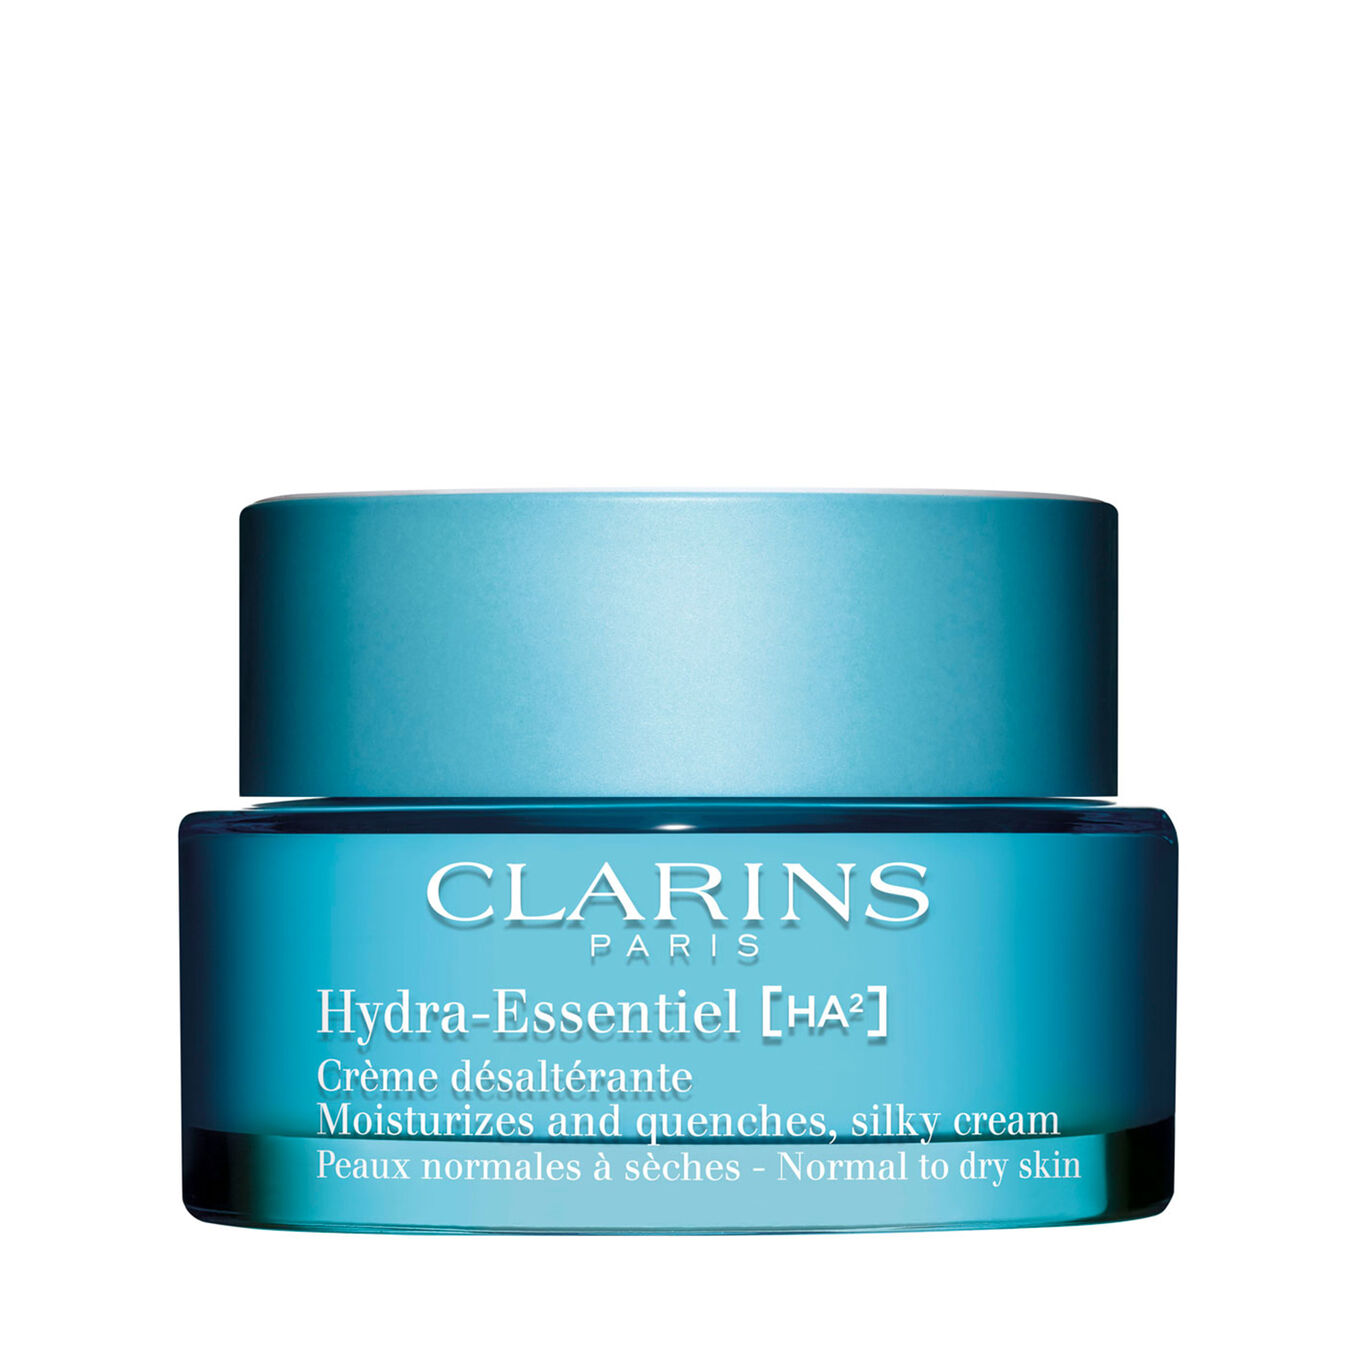 Clarins Hydra-Essentiel Crème désaltérante 50ml Damen von Clarins